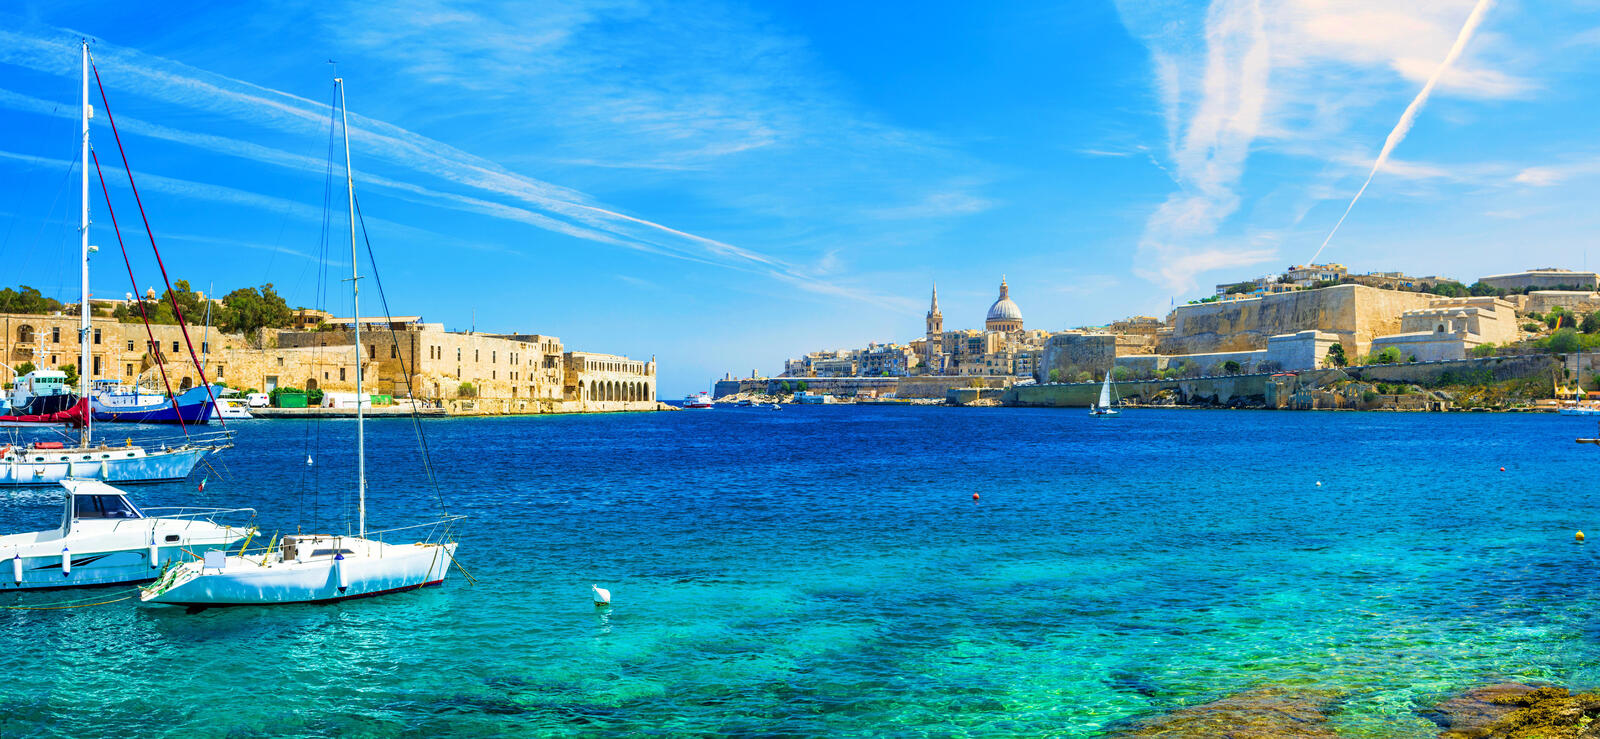 Wallpapers Malta Valletta the sea on the desktop